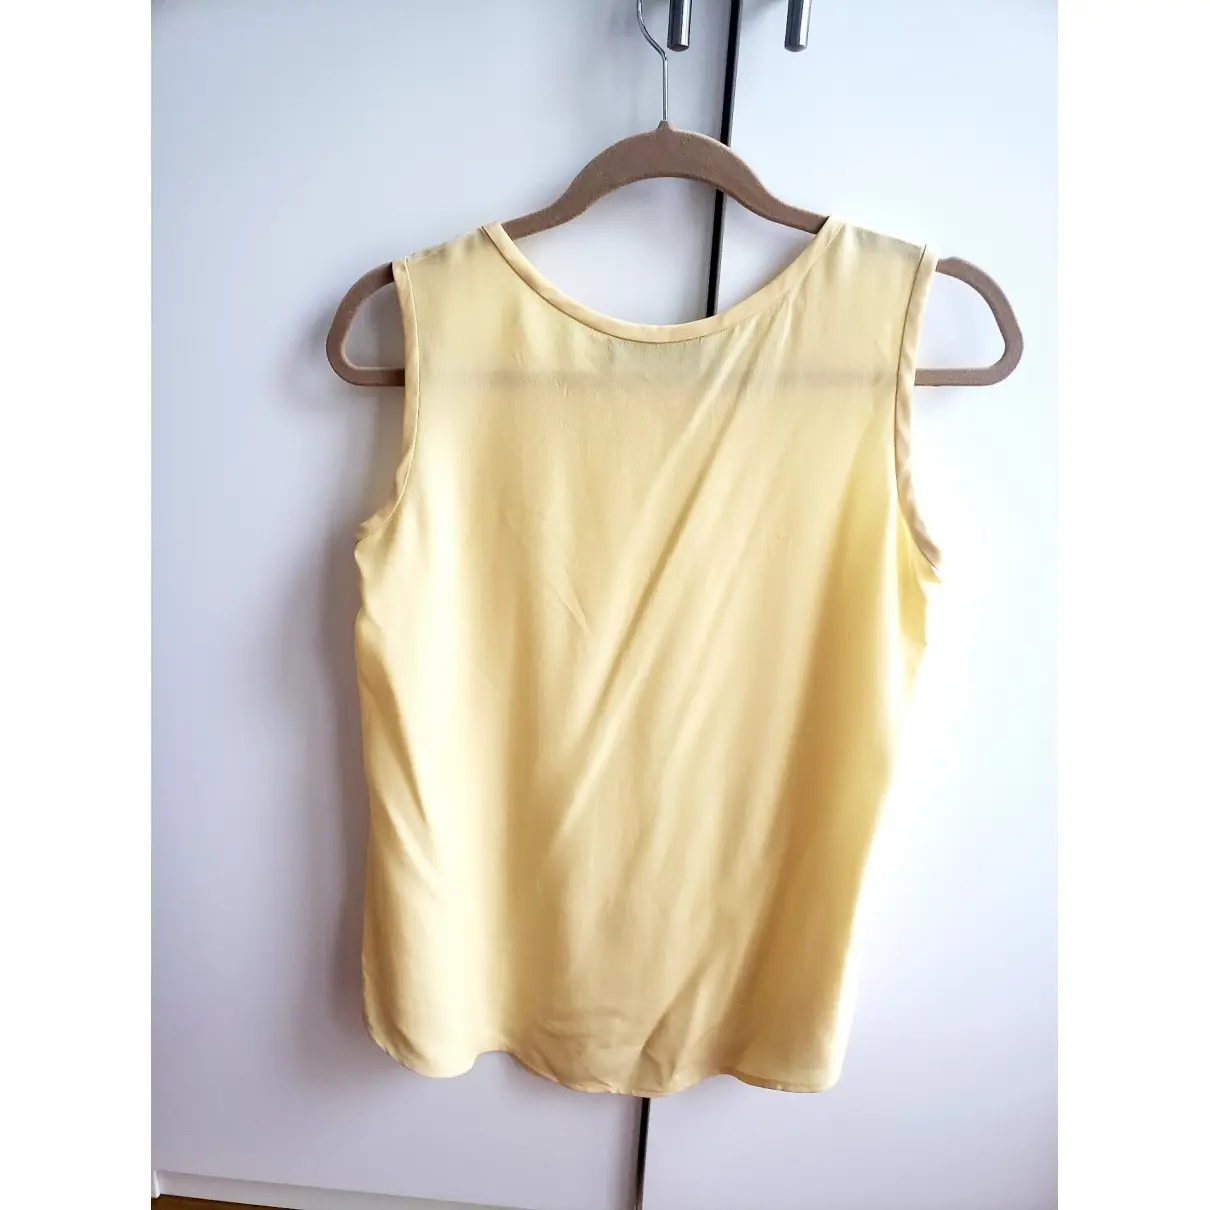 Buy Louis Feraud Silk blouse online